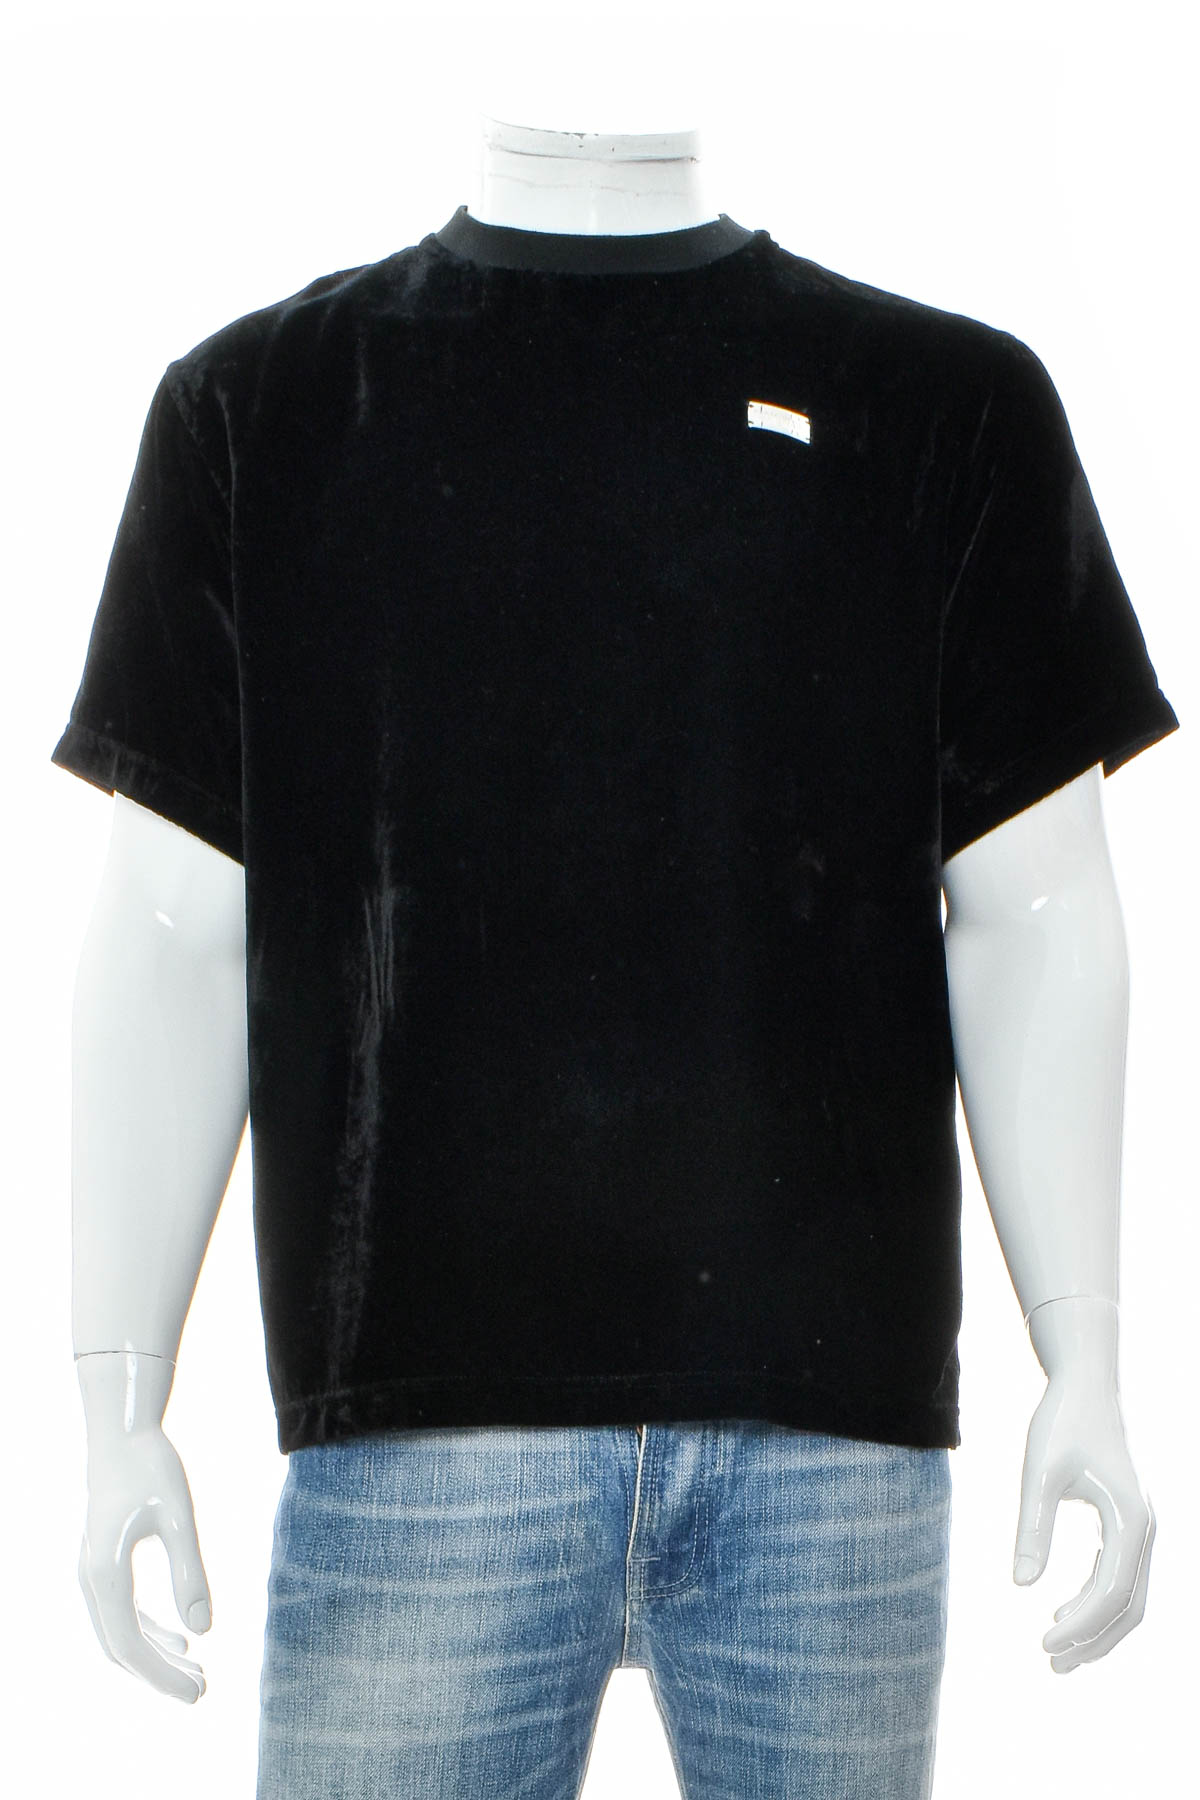 Αντρική μπλούζα - TEAM WANG - 0